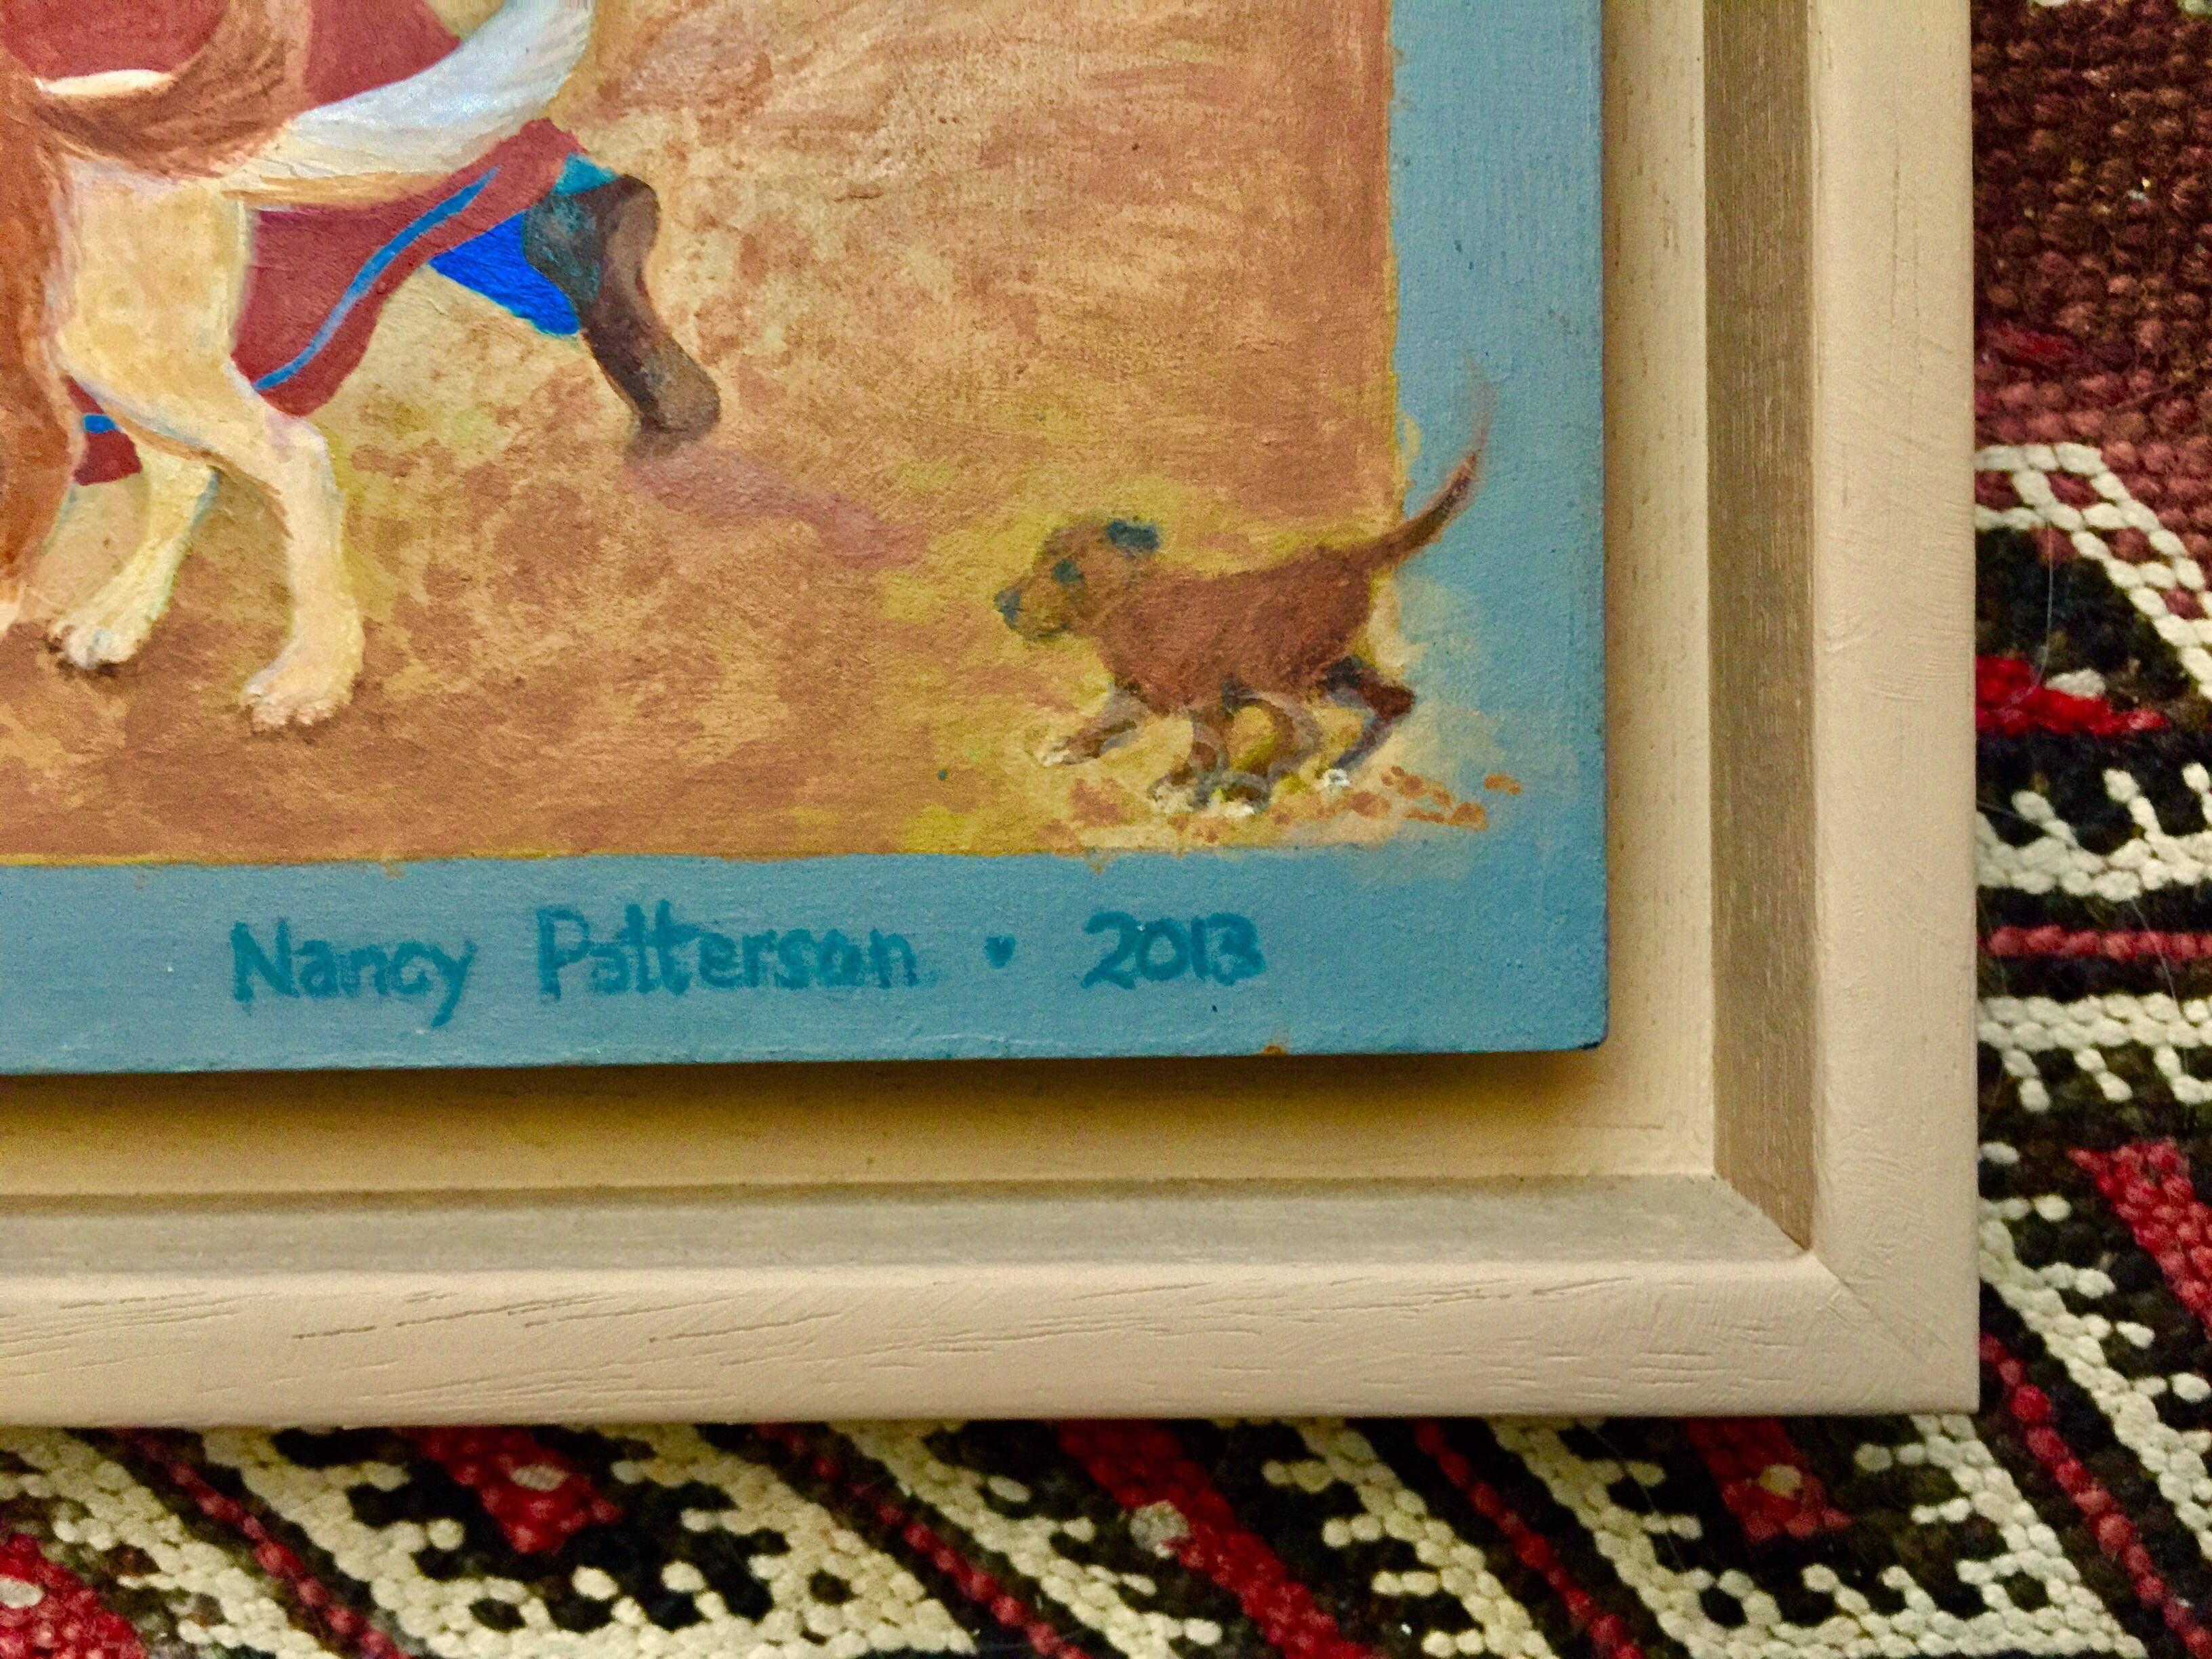 Peinture d'art populaire du Maroc, danse, chiens, camels, animaux, dunes, lune - Artisanat Painting par Nancy Patterson